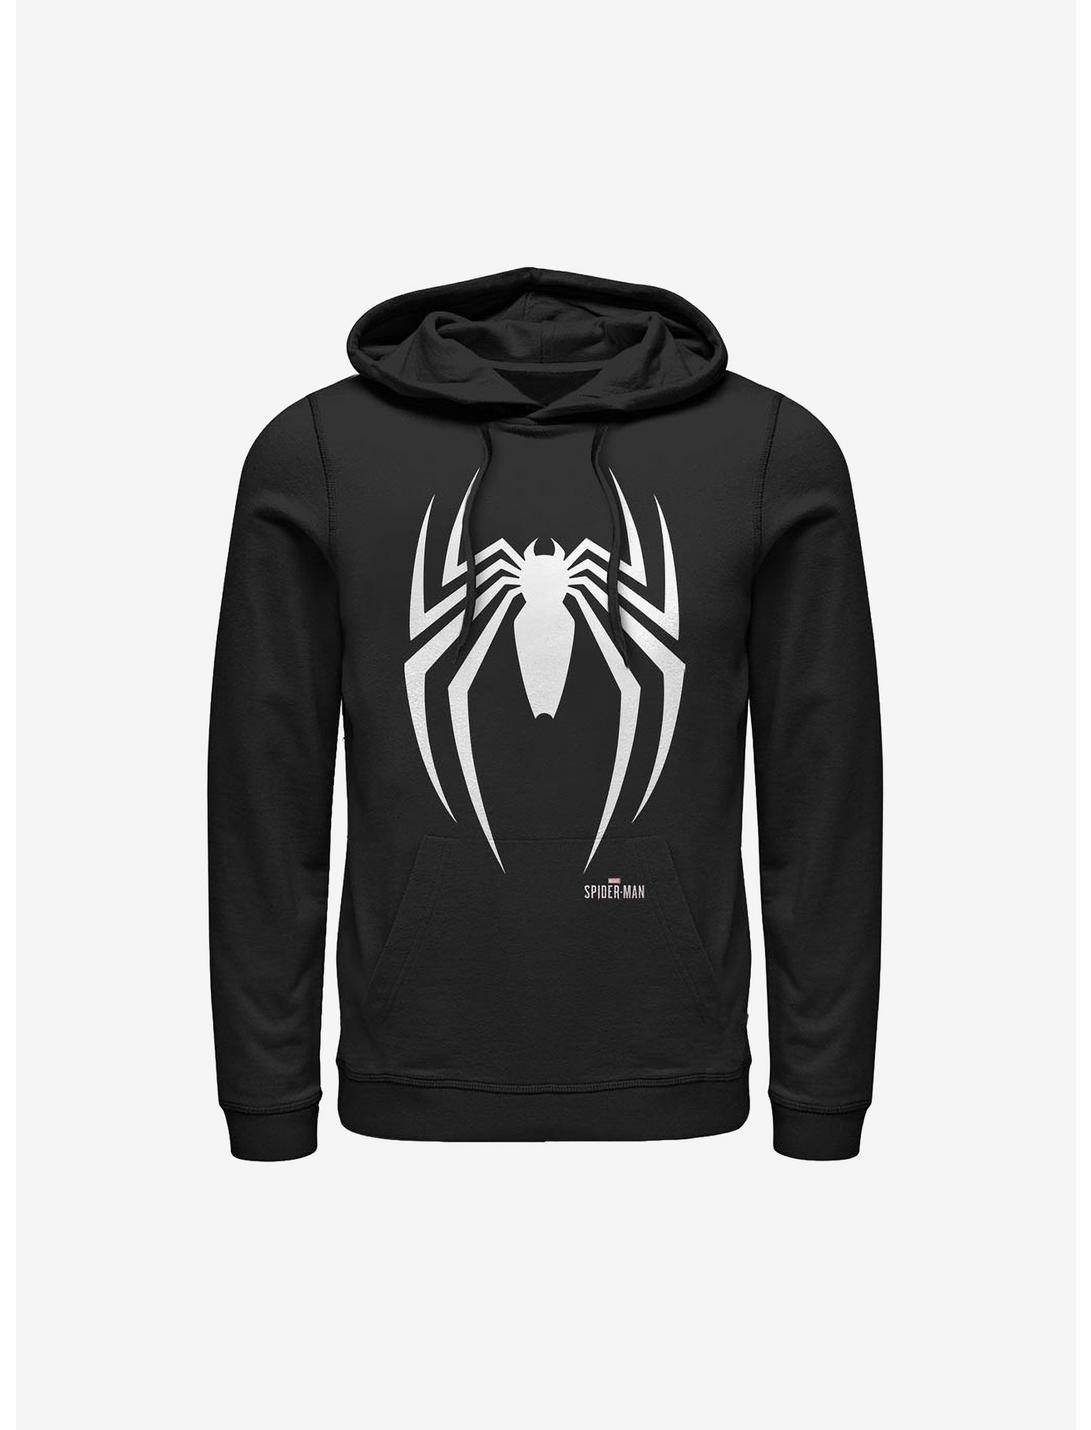 Web Head Size S,M,L,XL,XXL Black Mens Spiderman Hoodie Marvel 